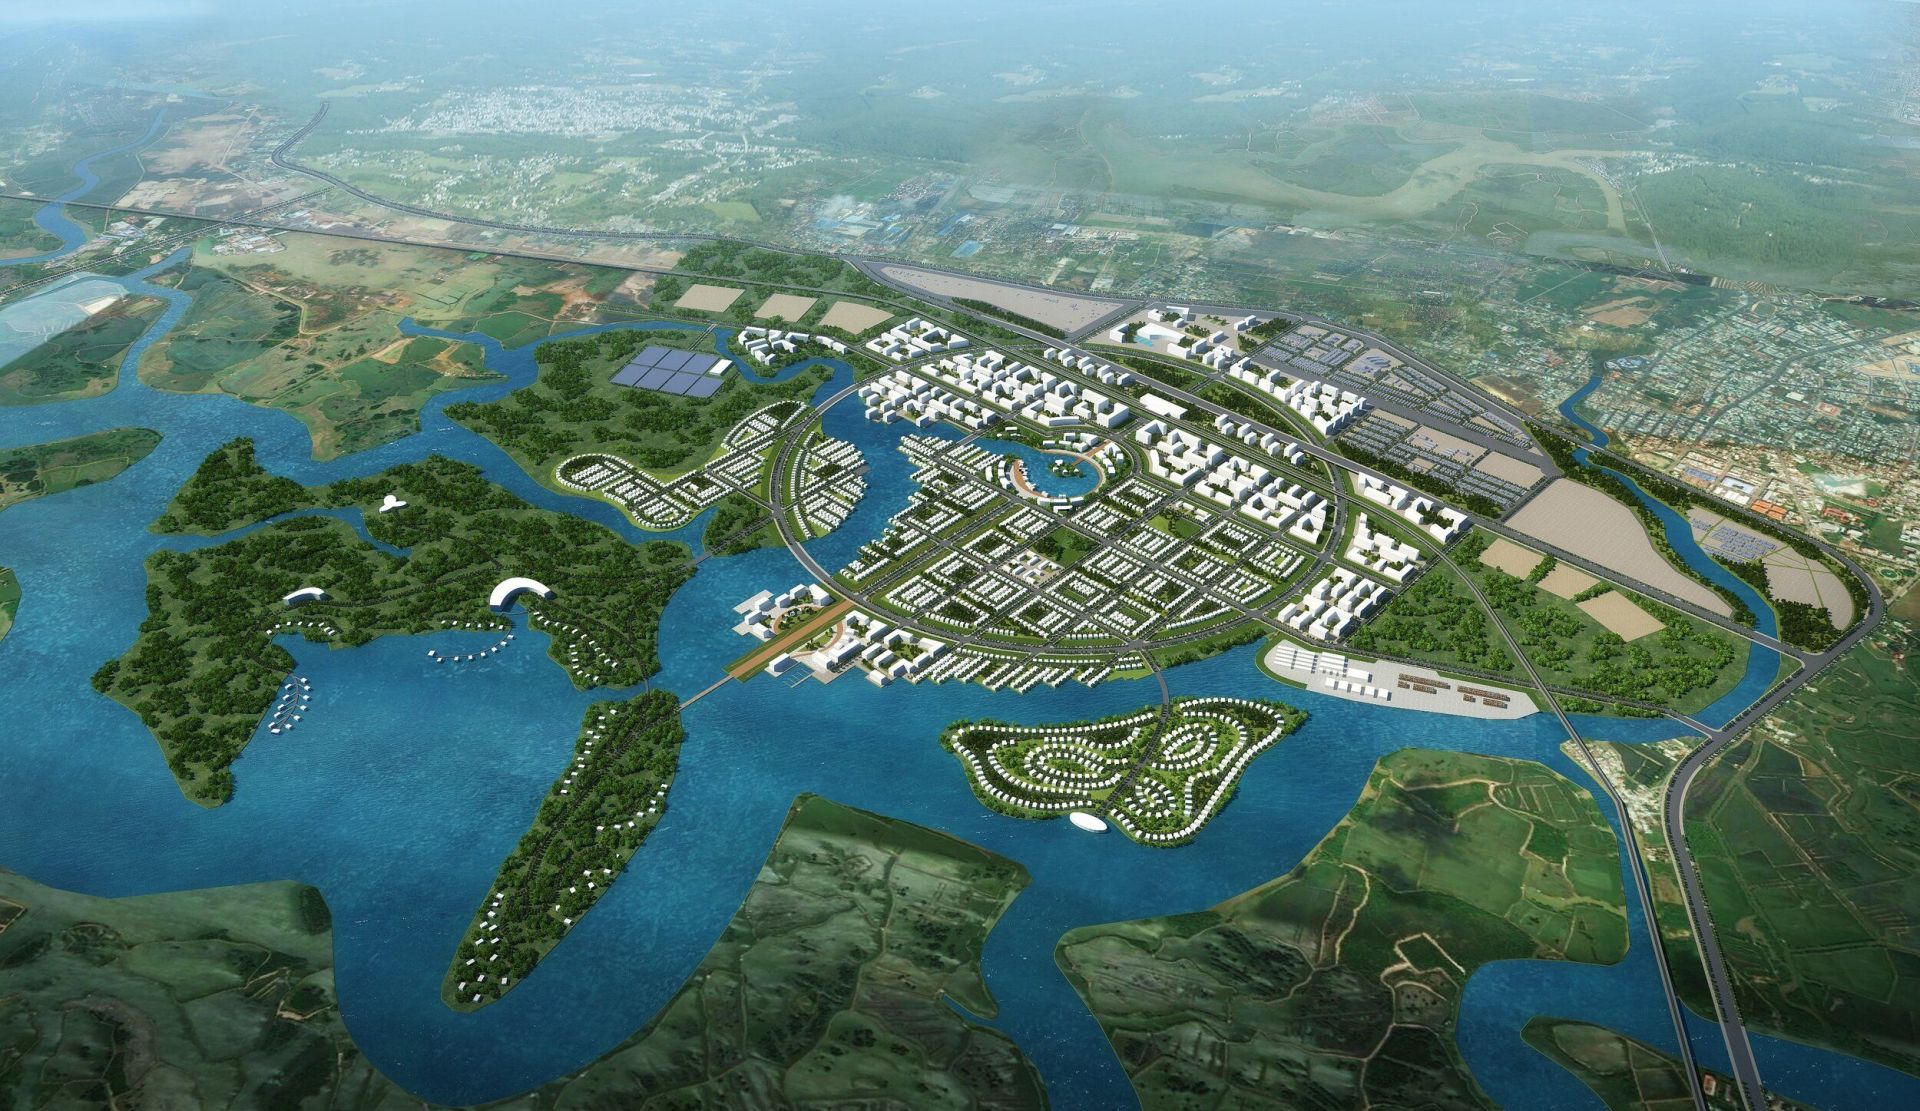 Chuyển động mới ở khu đô thị rộng gần 1.800 ha ở Bà Rịa - Vũng Tàu                                    